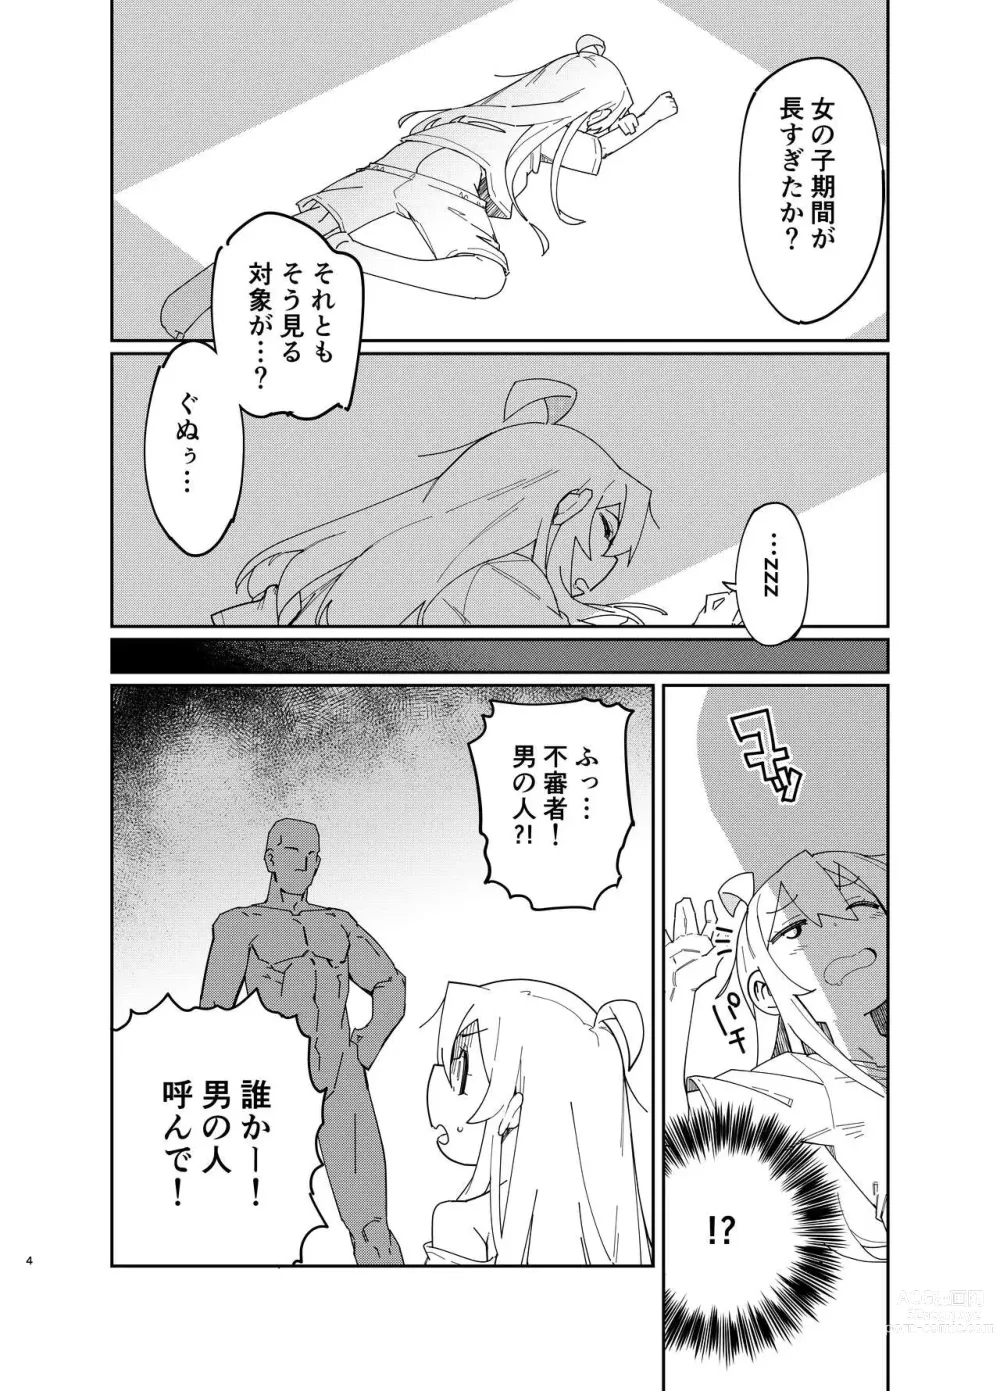 Page 3 of doujinshi Oniichan wa Oshiri Ijirasareru Hon